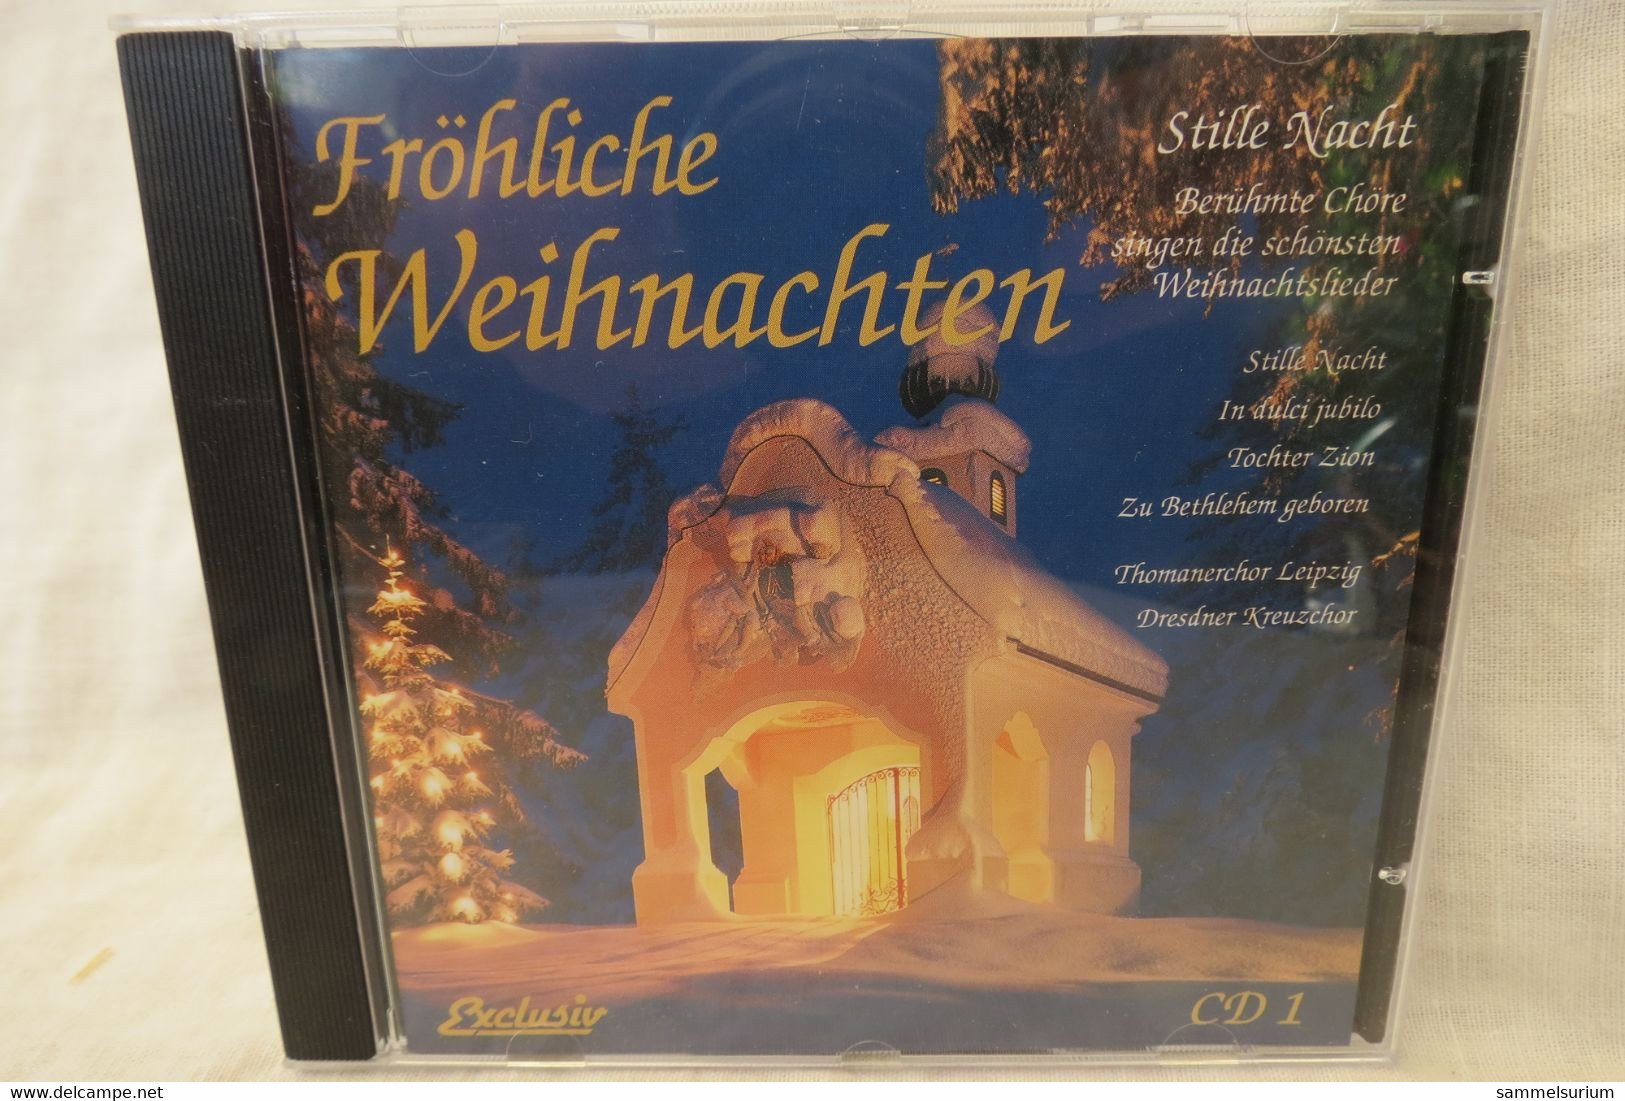 4 CDs "Fröhliche Weihnachten" Berühmte Chöre, Internationale Weihnachtslieder, Gitarrenmusik, Stars Singen Weihnachtslie - Weihnachtslieder